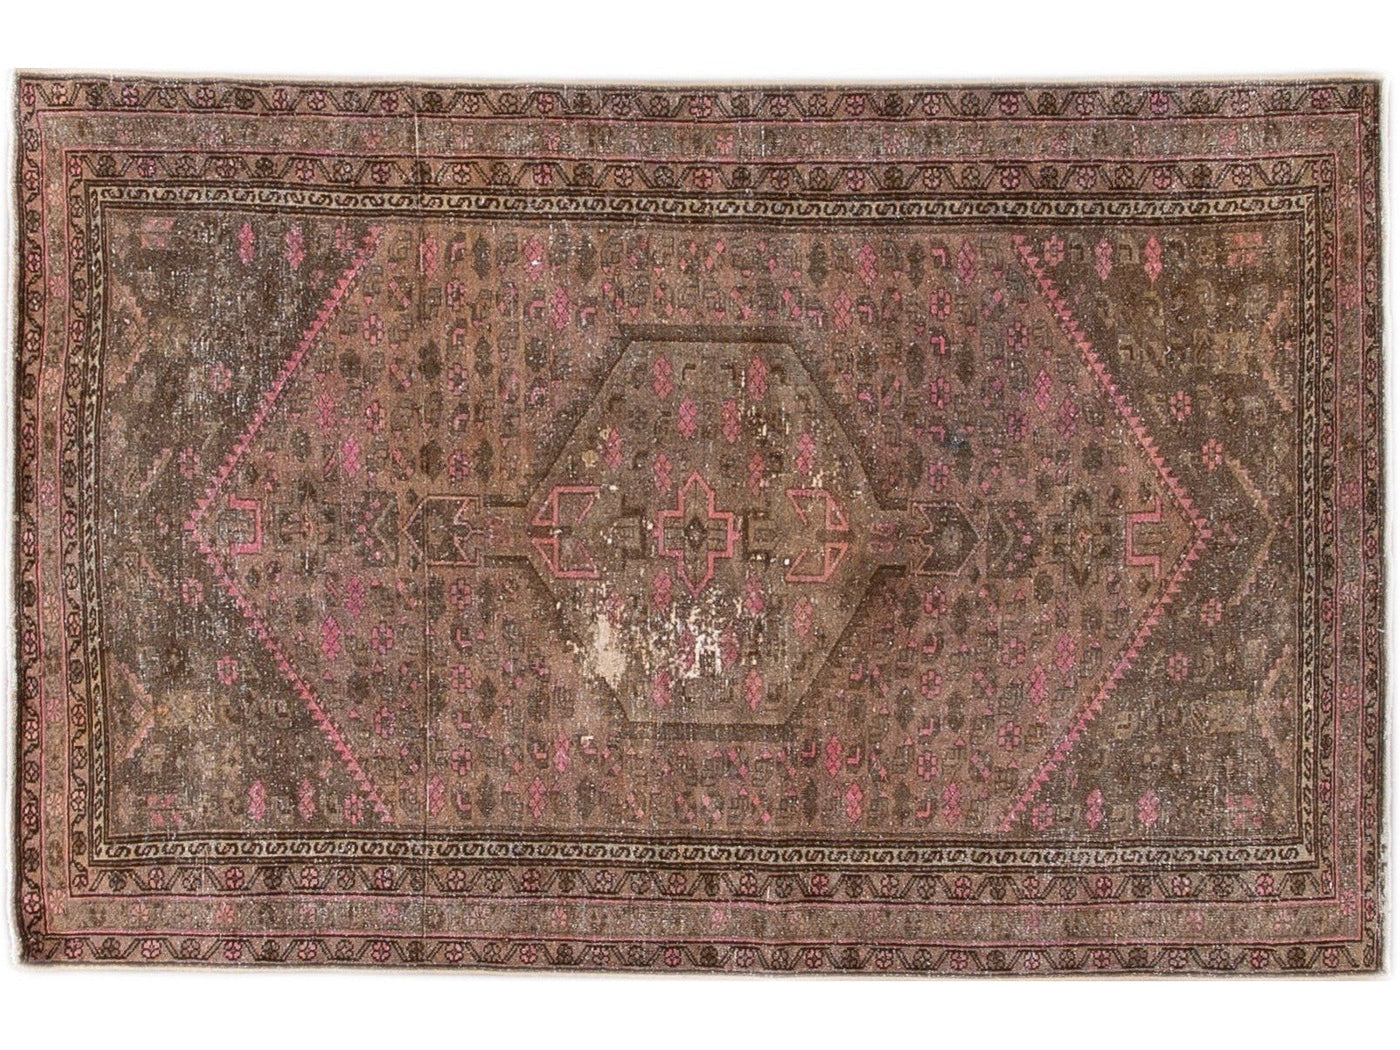 Vintage Persian Distressed Brown and Pink Handmade Wool Rug